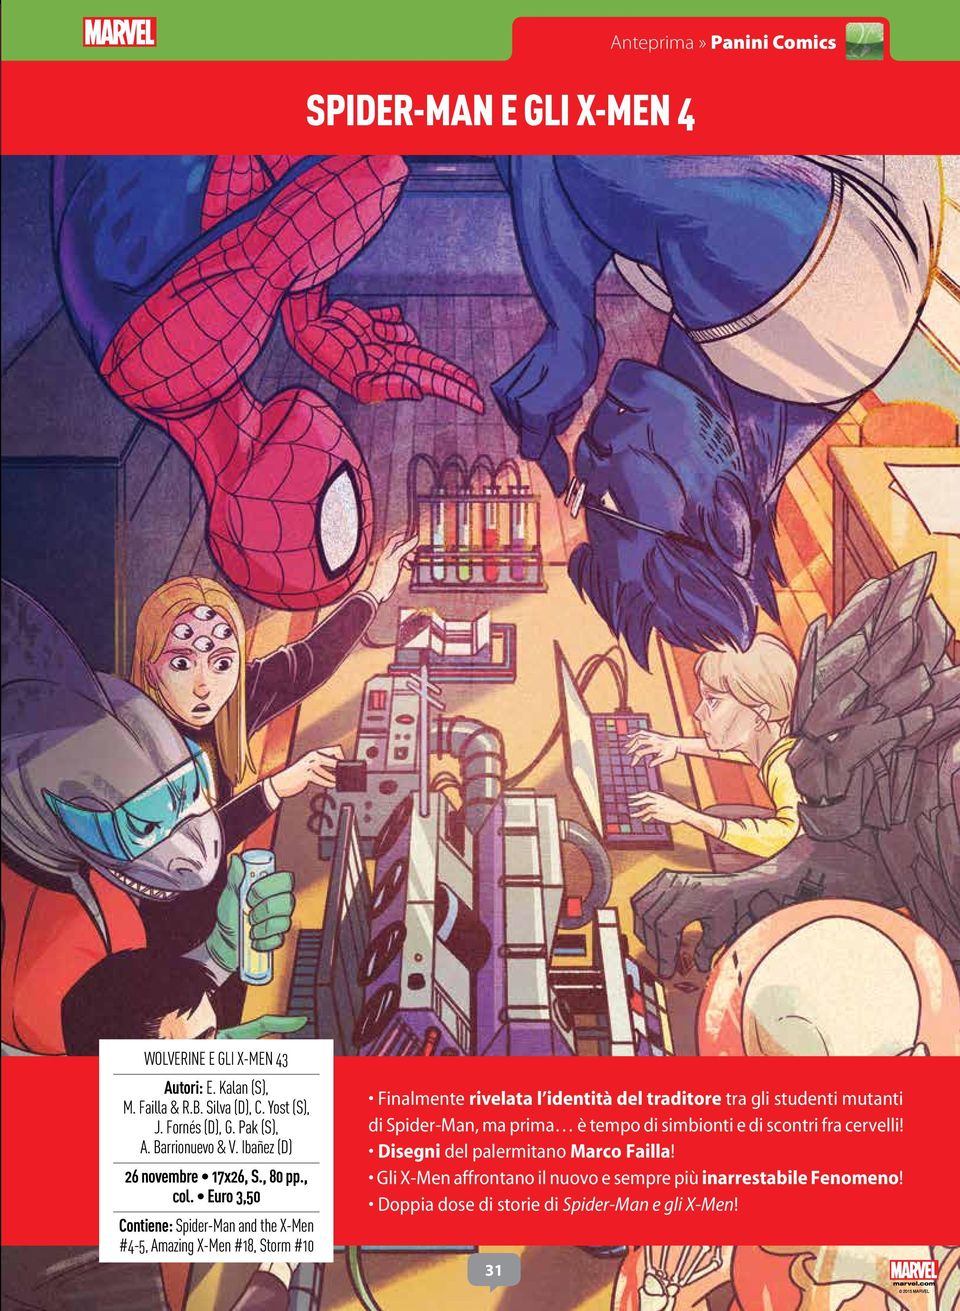 Euro 3,50 Contiene: Spider-Man and the X-Men #4-5, Amazing X-Men #18, Storm #10 Finalmente rivelata l identità del traditore tra gli studenti mutanti di